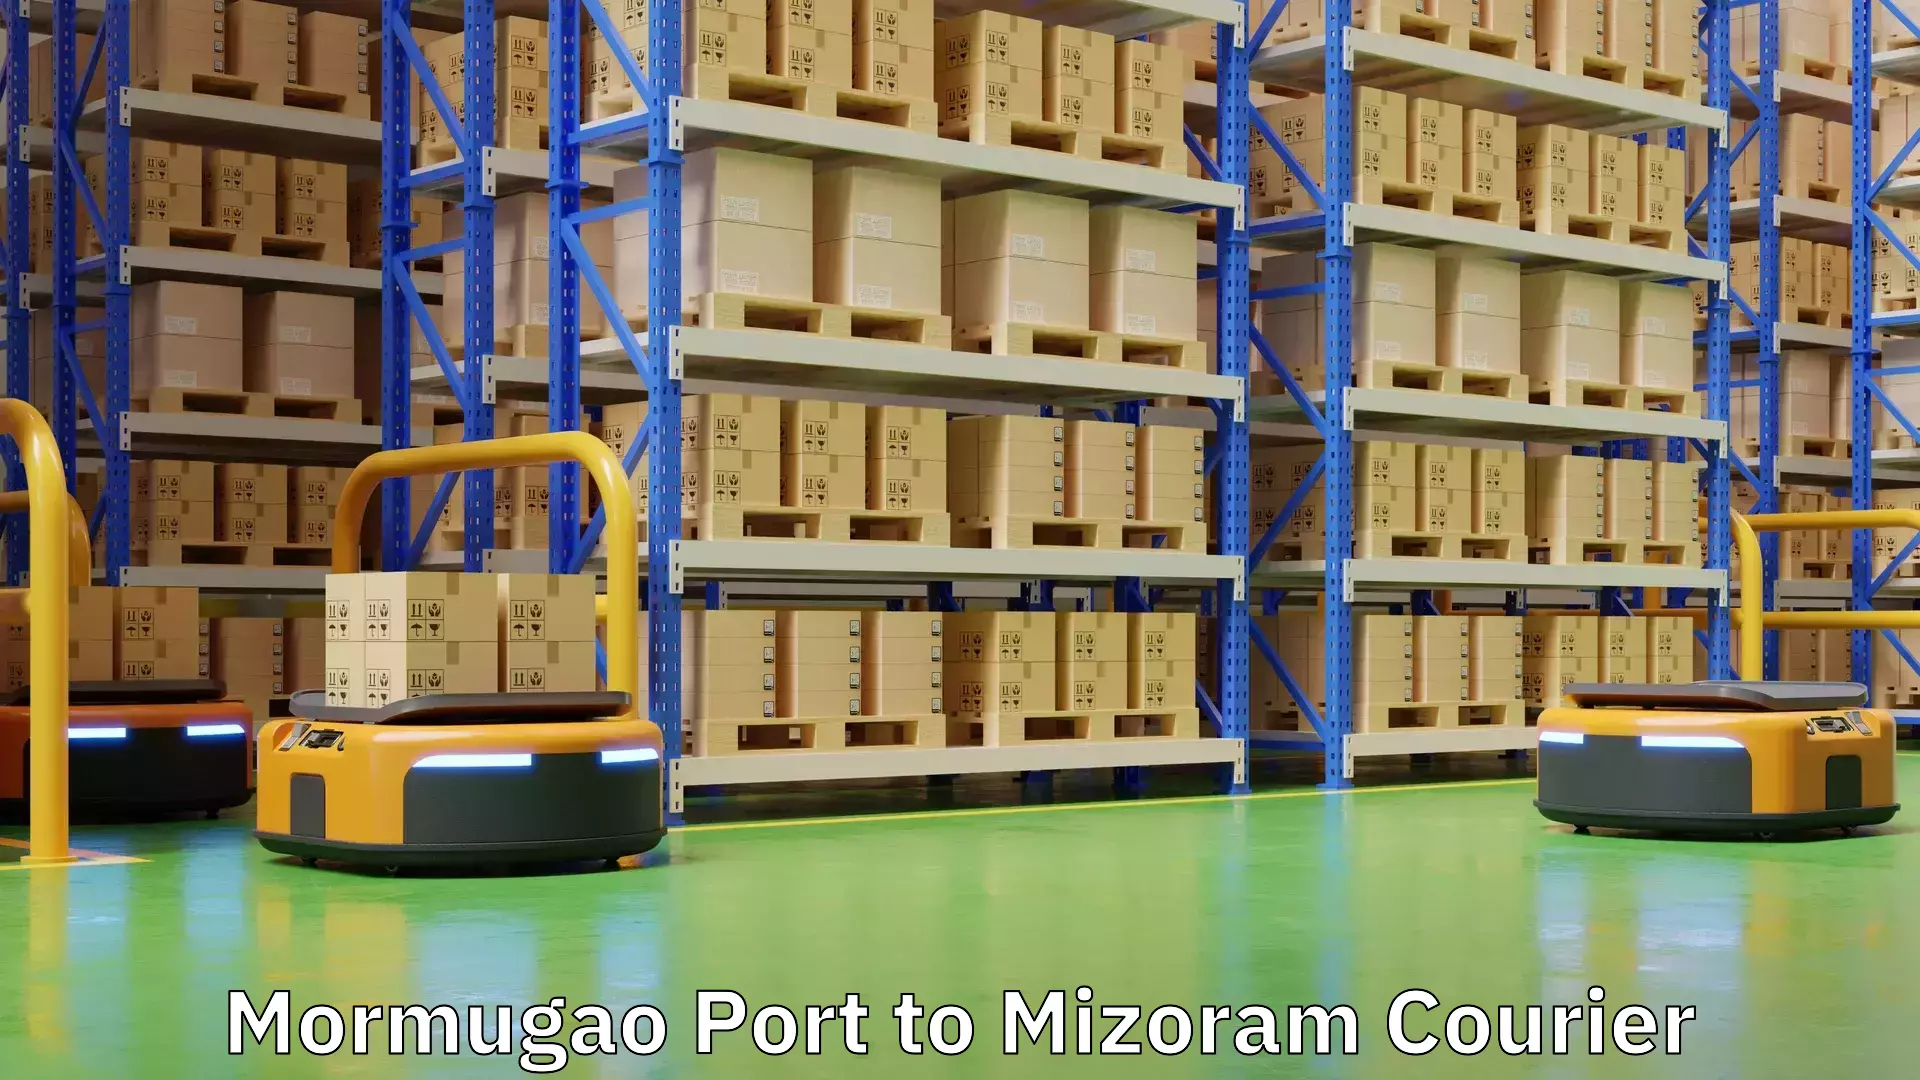 Express delivery network Mormugao Port to Mizoram